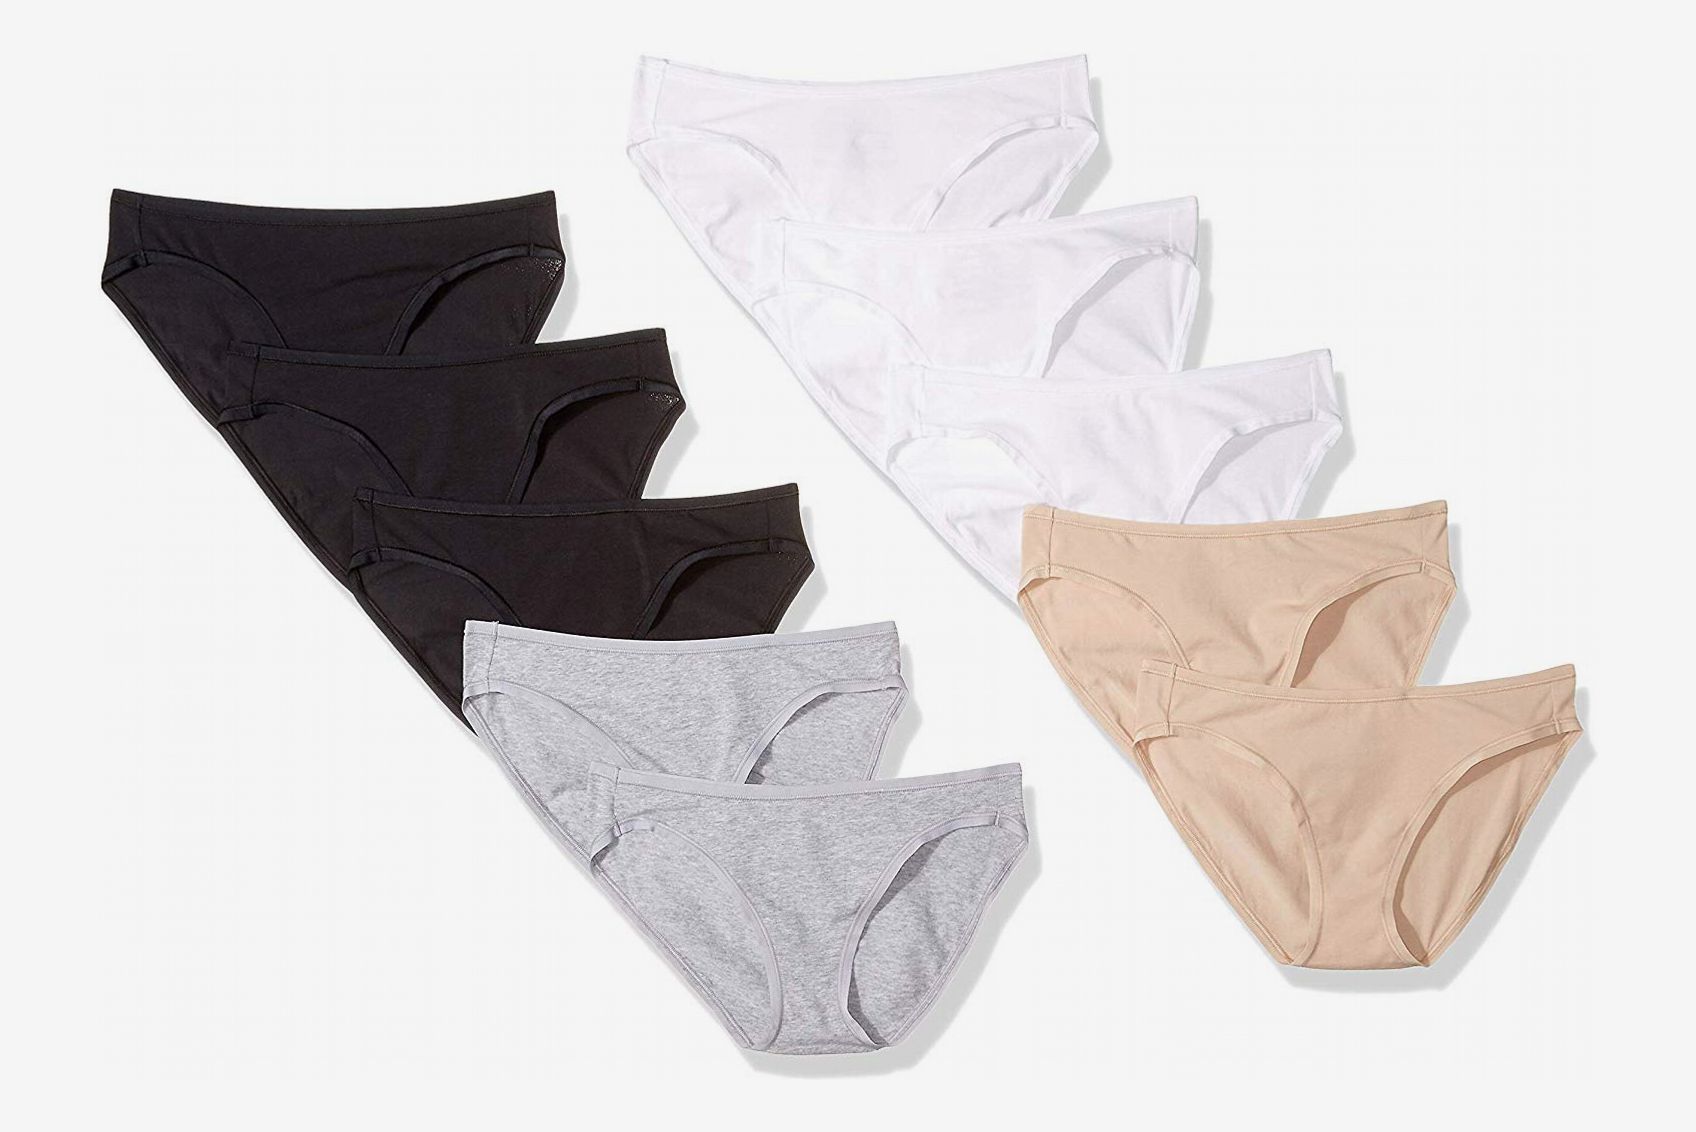 Essentials Damen Cotton Stretch High-Cut Bikini Panty 